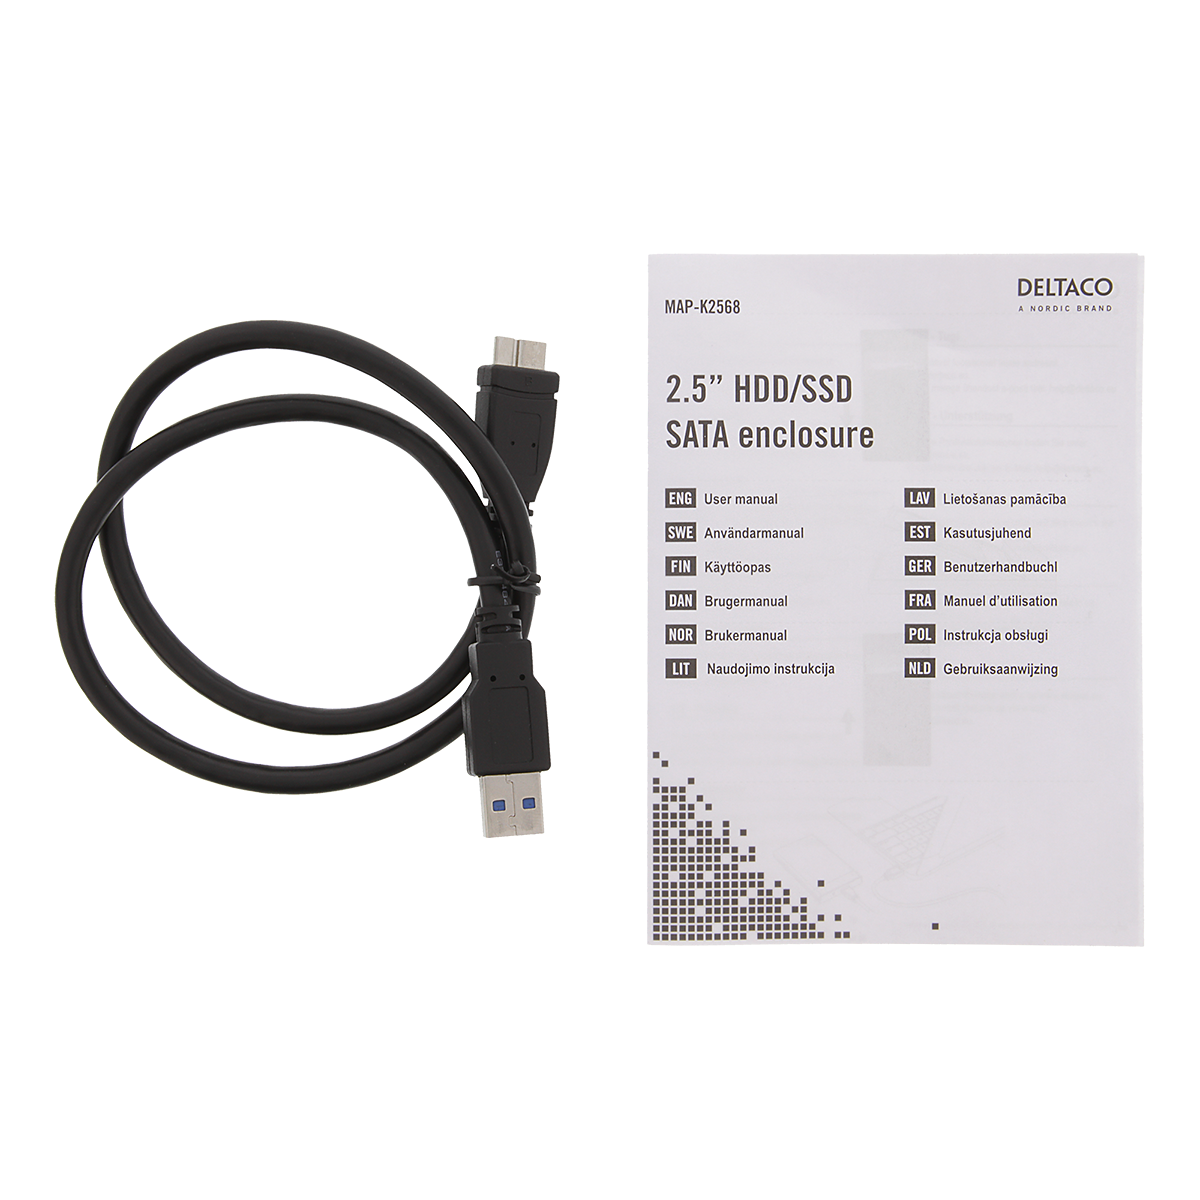 DELTACO Externt hårddiskkabinett, USB 3.0, 2.5" HDD, svart